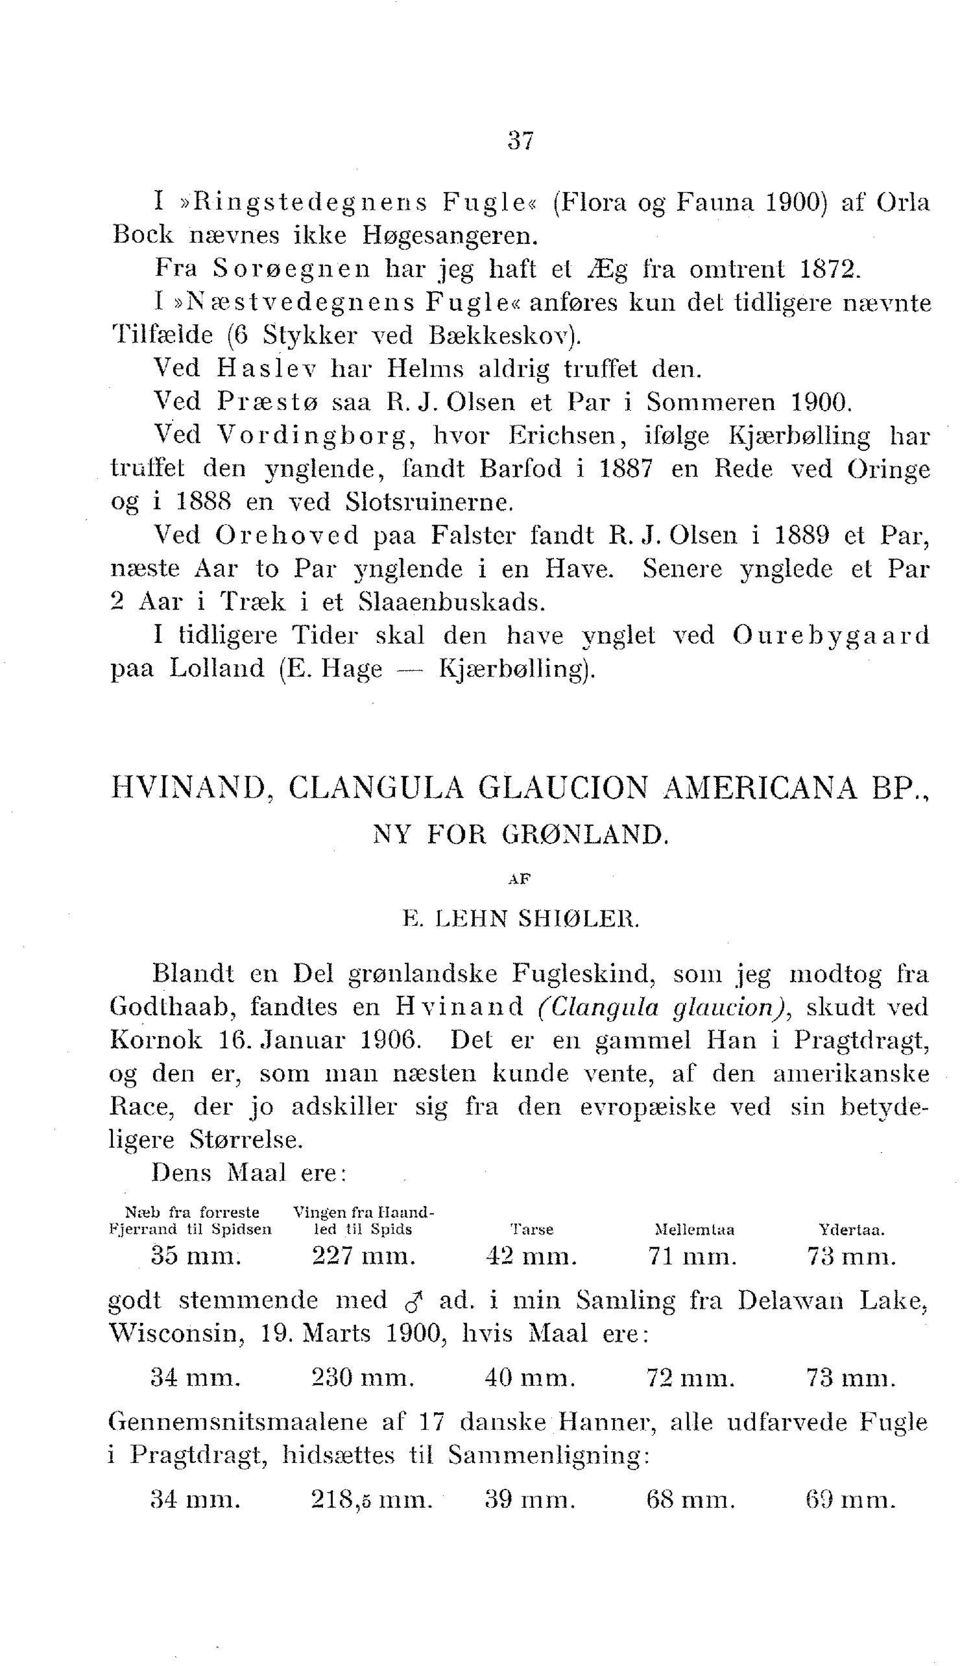 v ed V o r d i n g b o r g, hvor Erichsen, ifølge Kjærbølling har trufiet den ynglende, fandt Barfod i 1887 en Rede ved Oringe og i 1888 en ved Slotsruinerne. Ved O re hoved paa Falster fandt R. J.